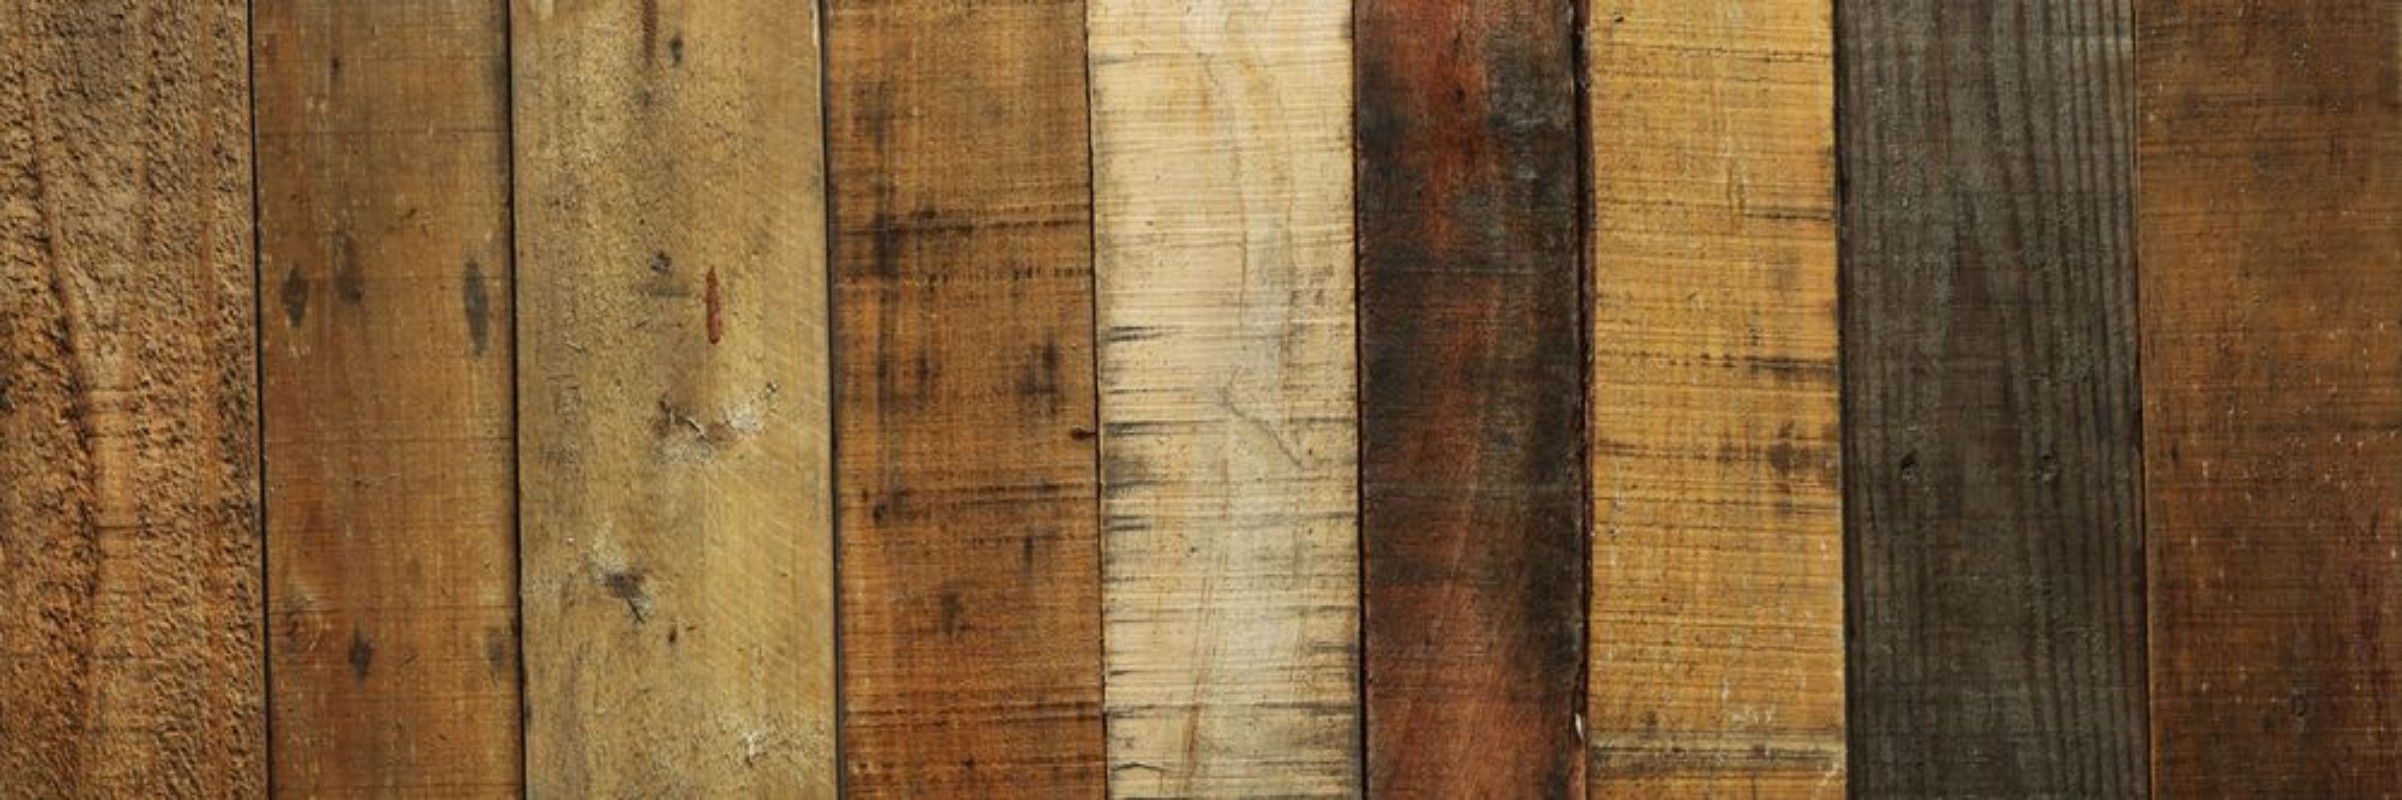 Afbeeldingen van Old worn out wooden boards background